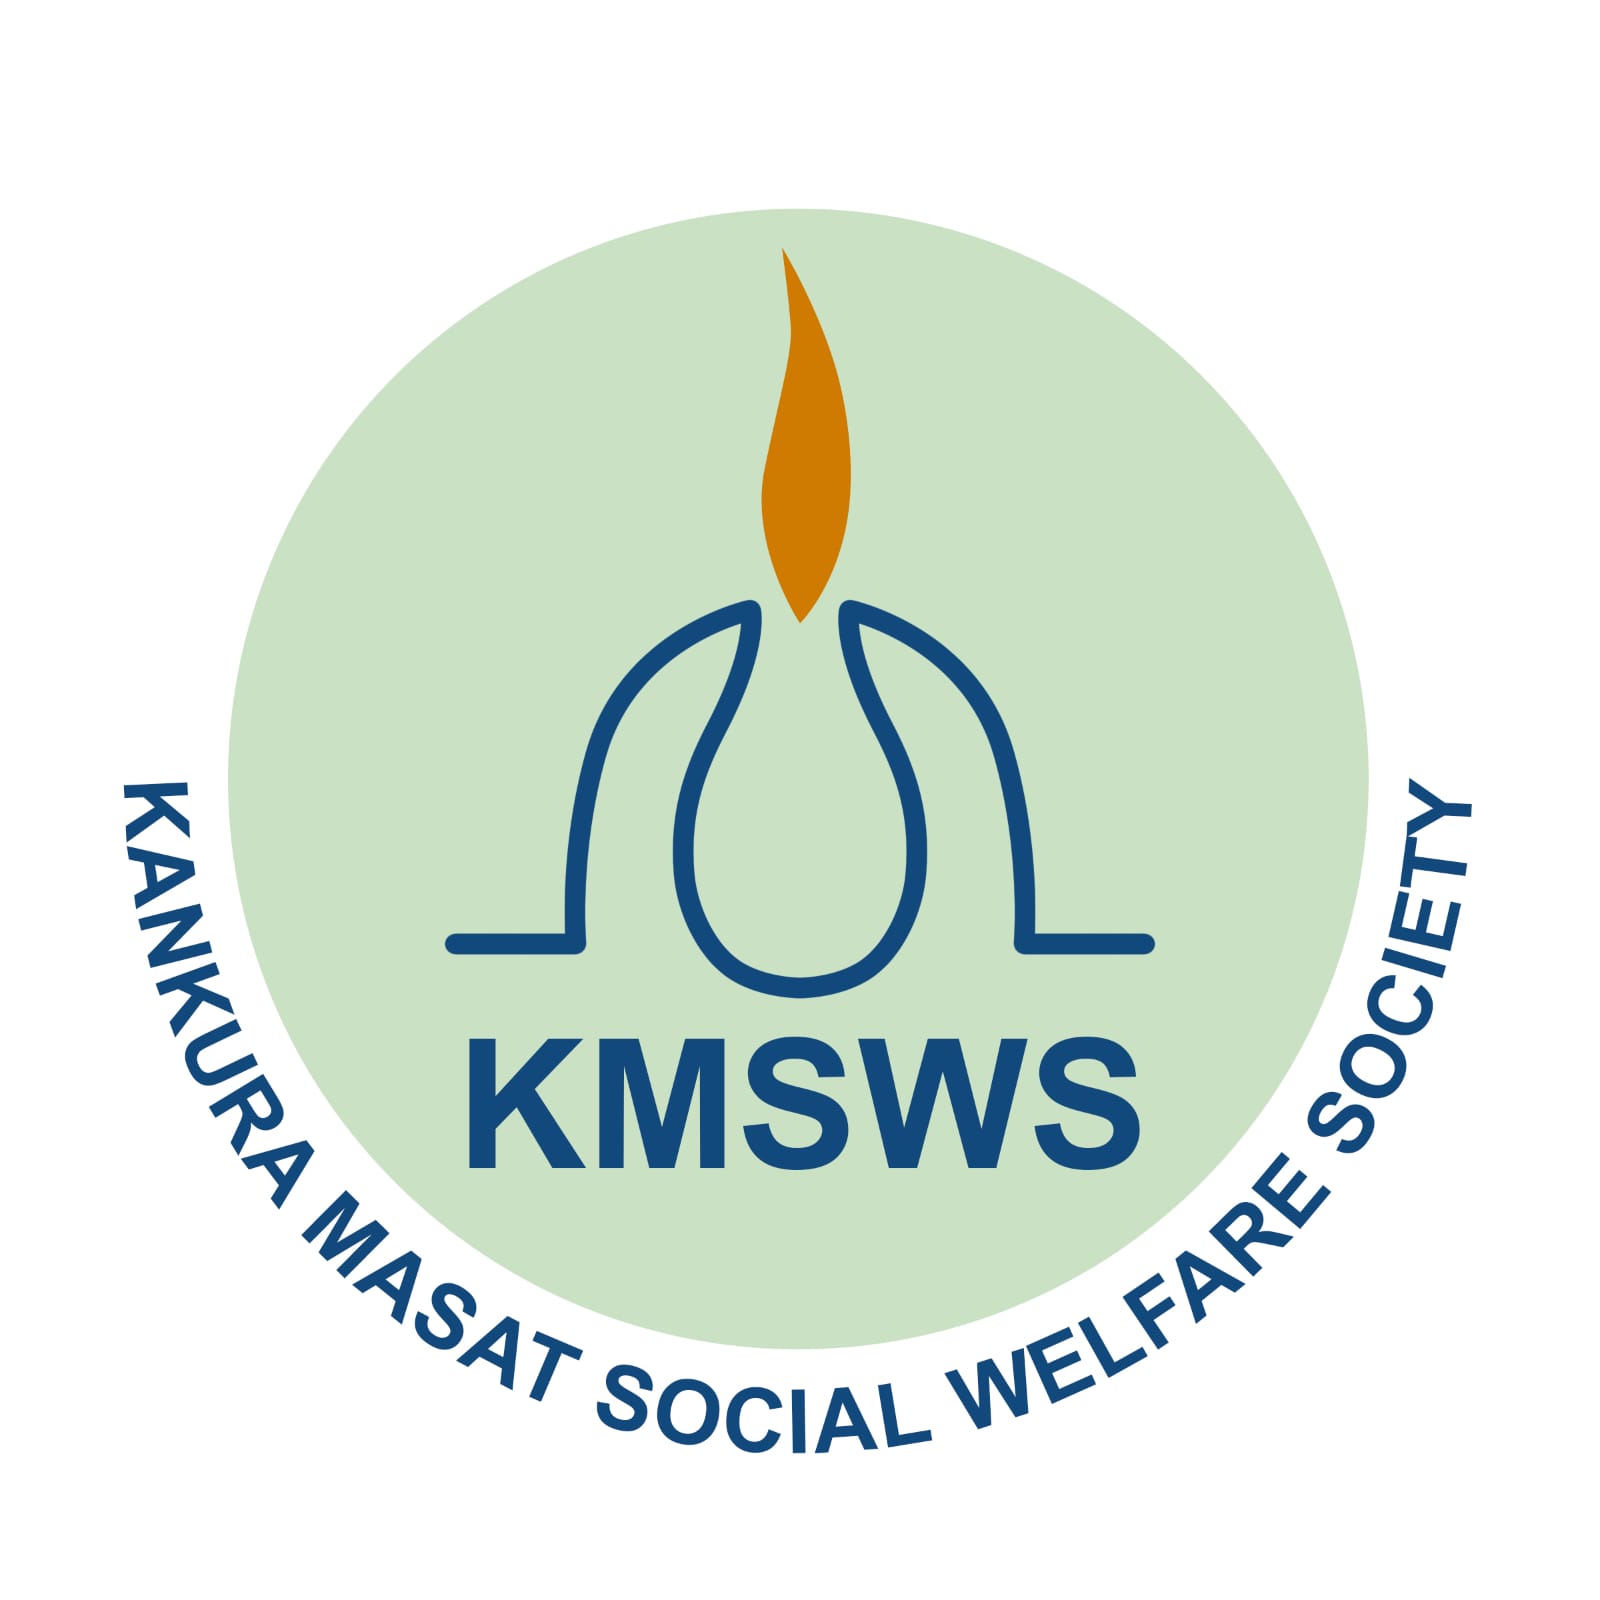 Kankura Masat Social Welfare Society